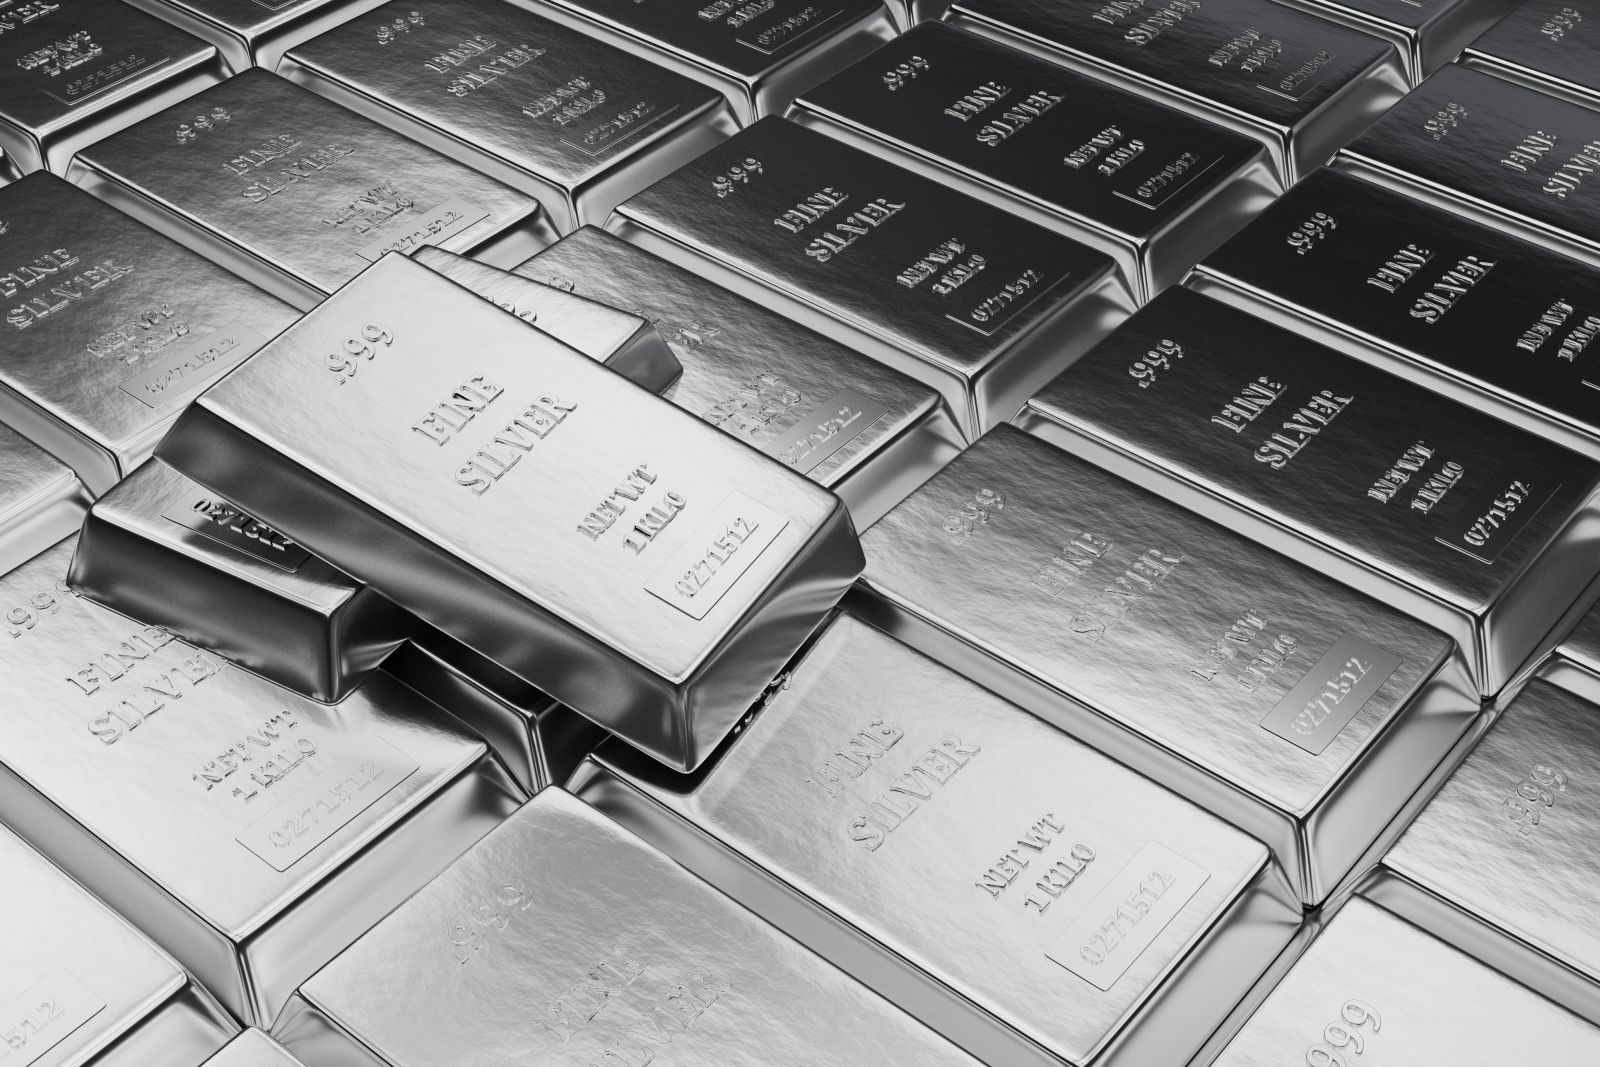 Silver - Silver bullion by SonerCdem via iStock